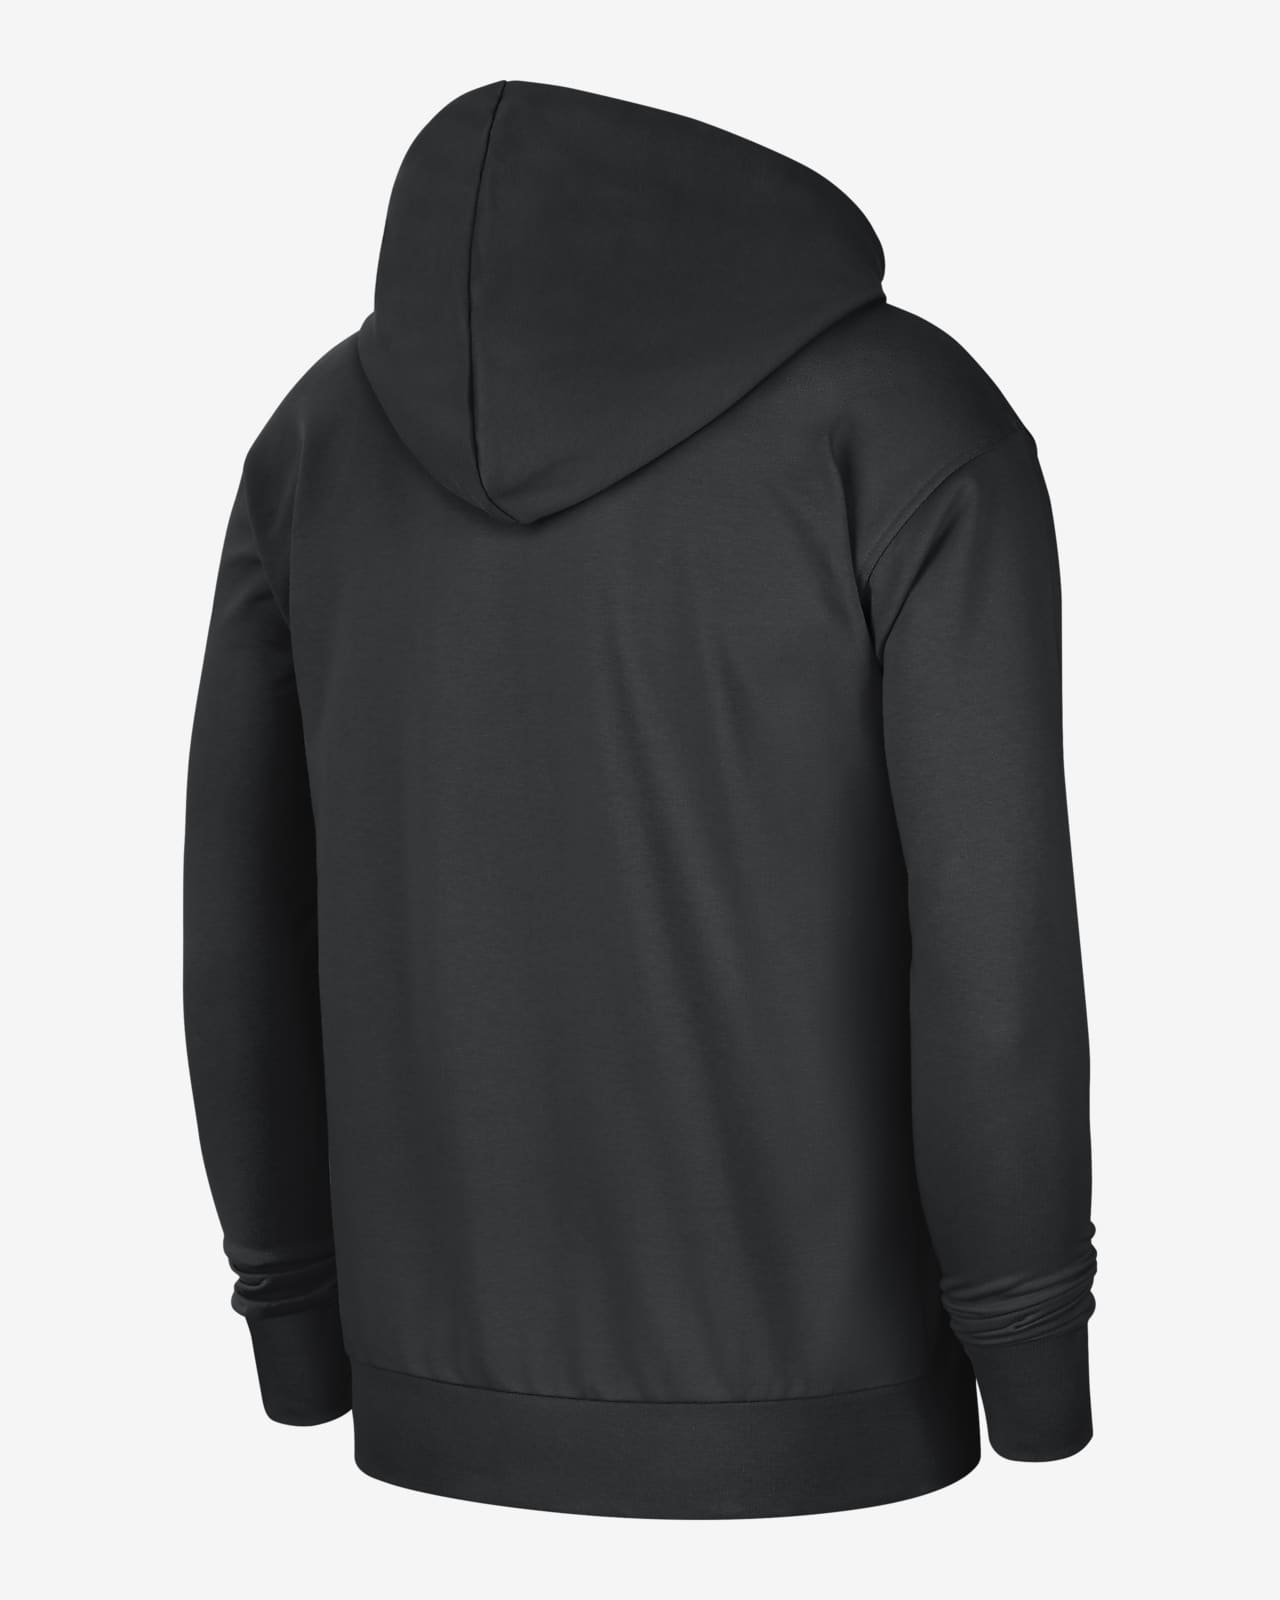 dri fit black hoodie